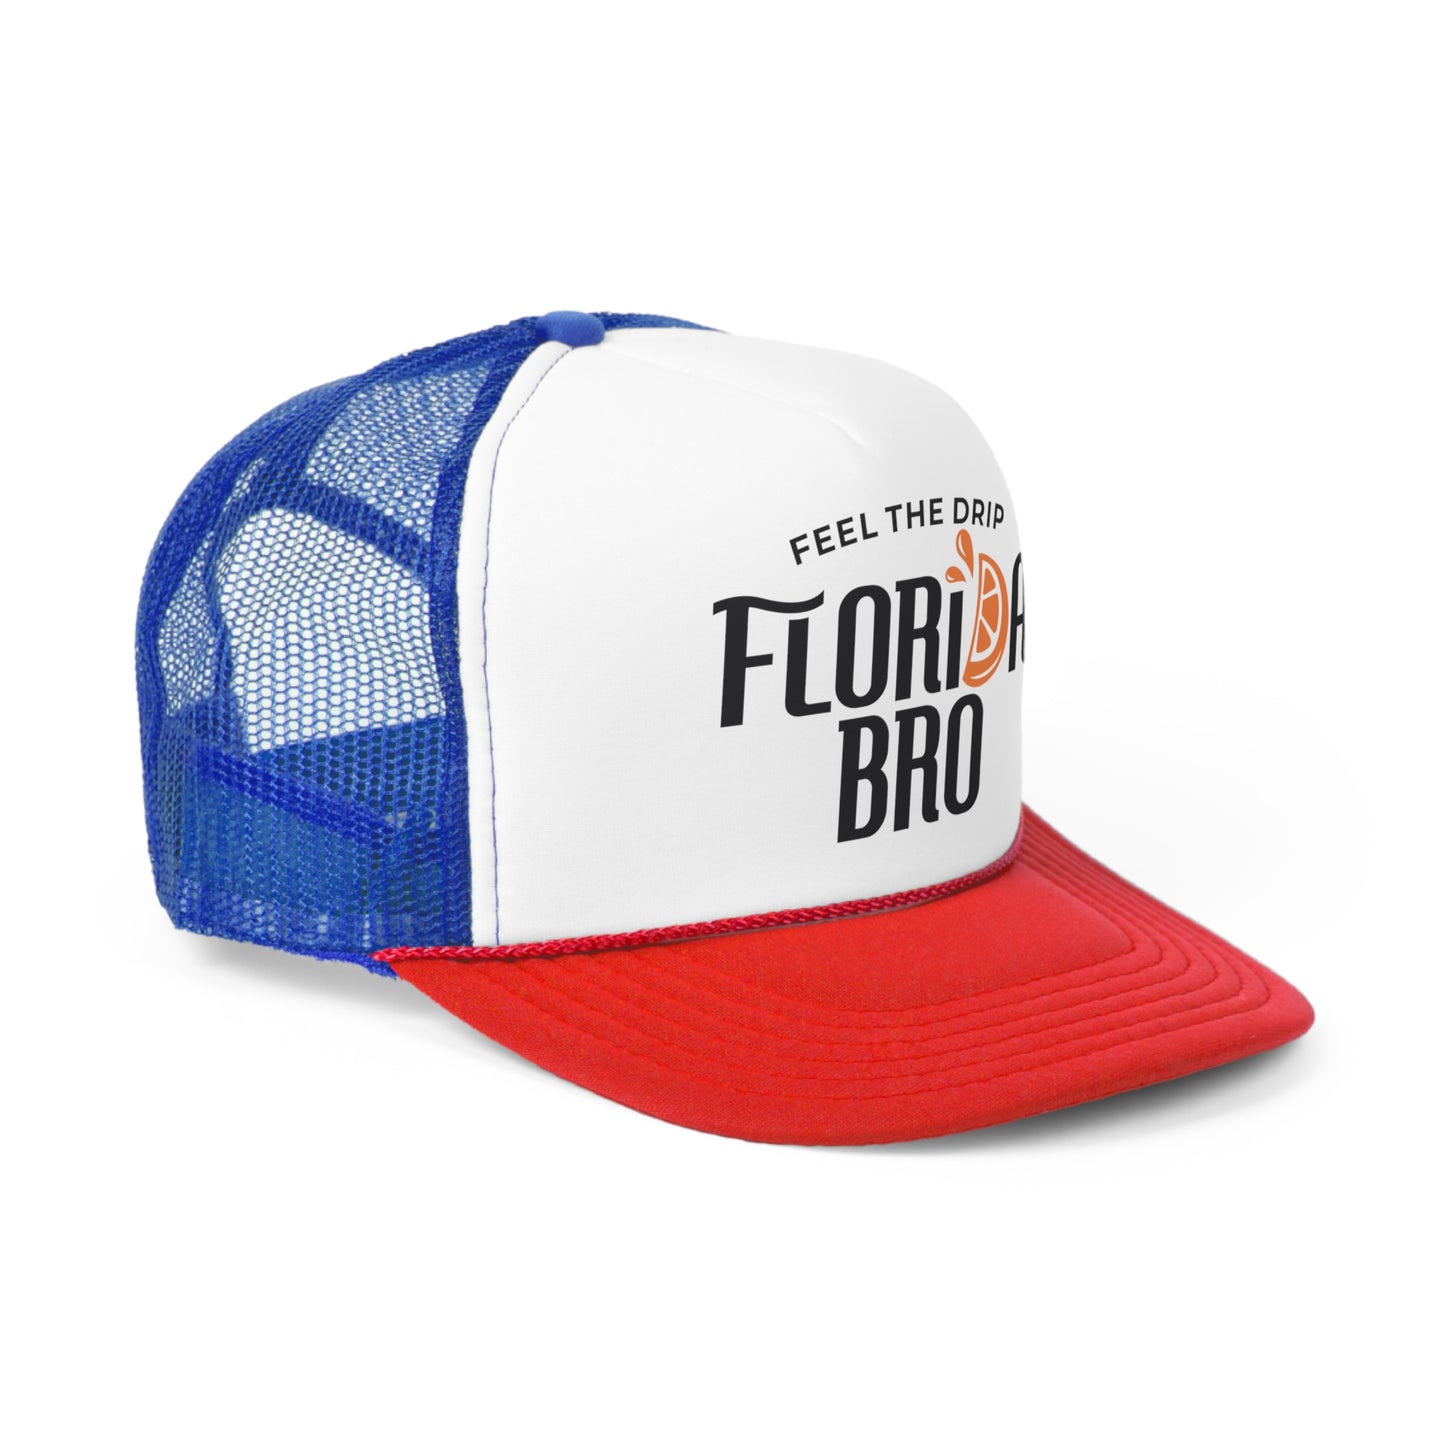 FLORIDA BRO - Florida Beach Trucker Cap